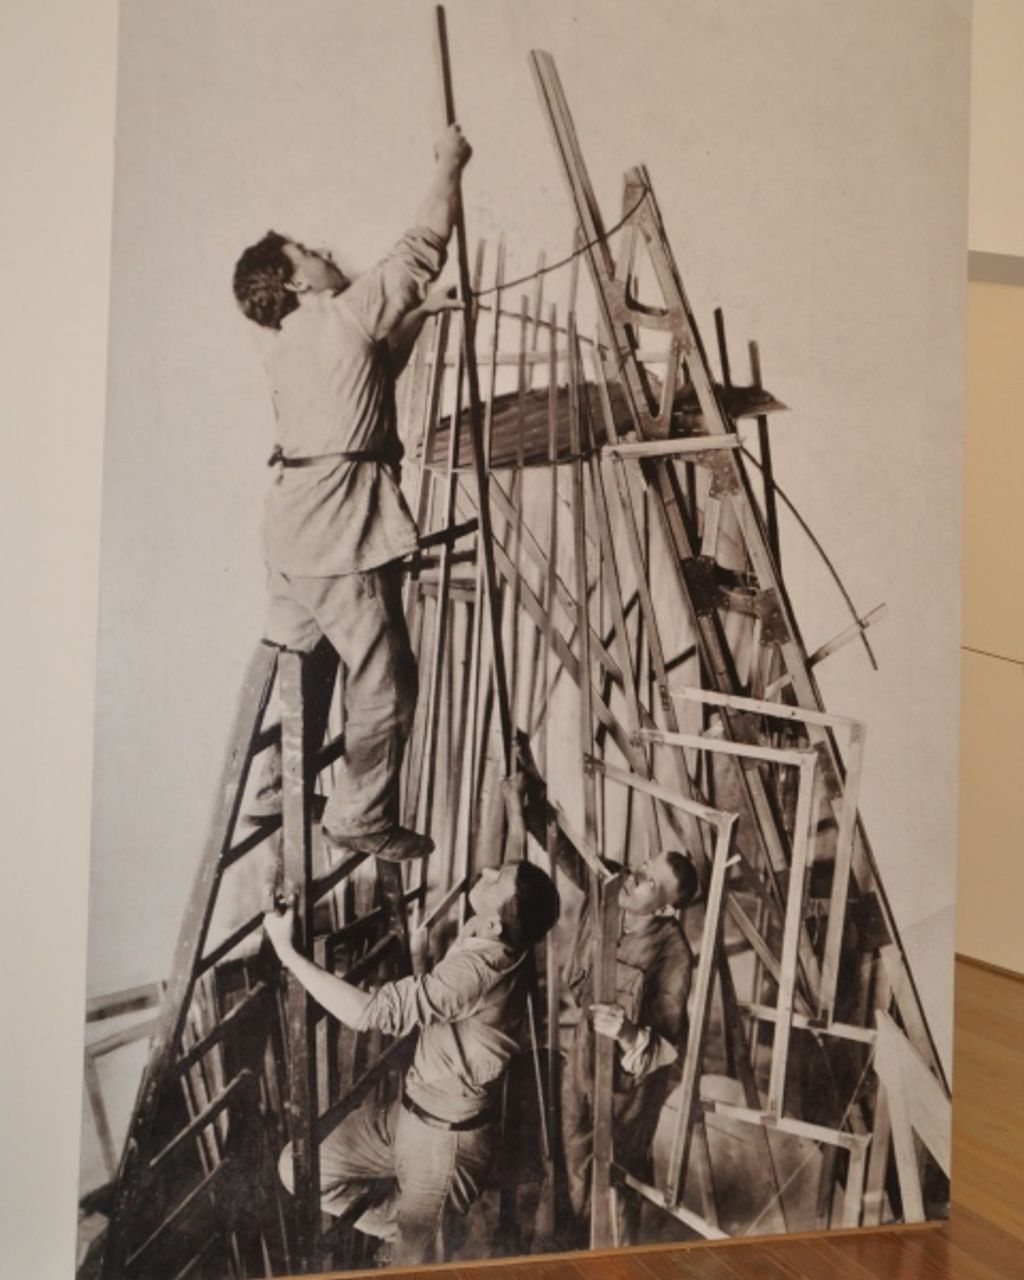 Historisches Foto aus Dokumentationsteil der Ausstellung: Tatlin mit Helfern beim Turmbau, Petrograd 1920, unbekannter Fotograf